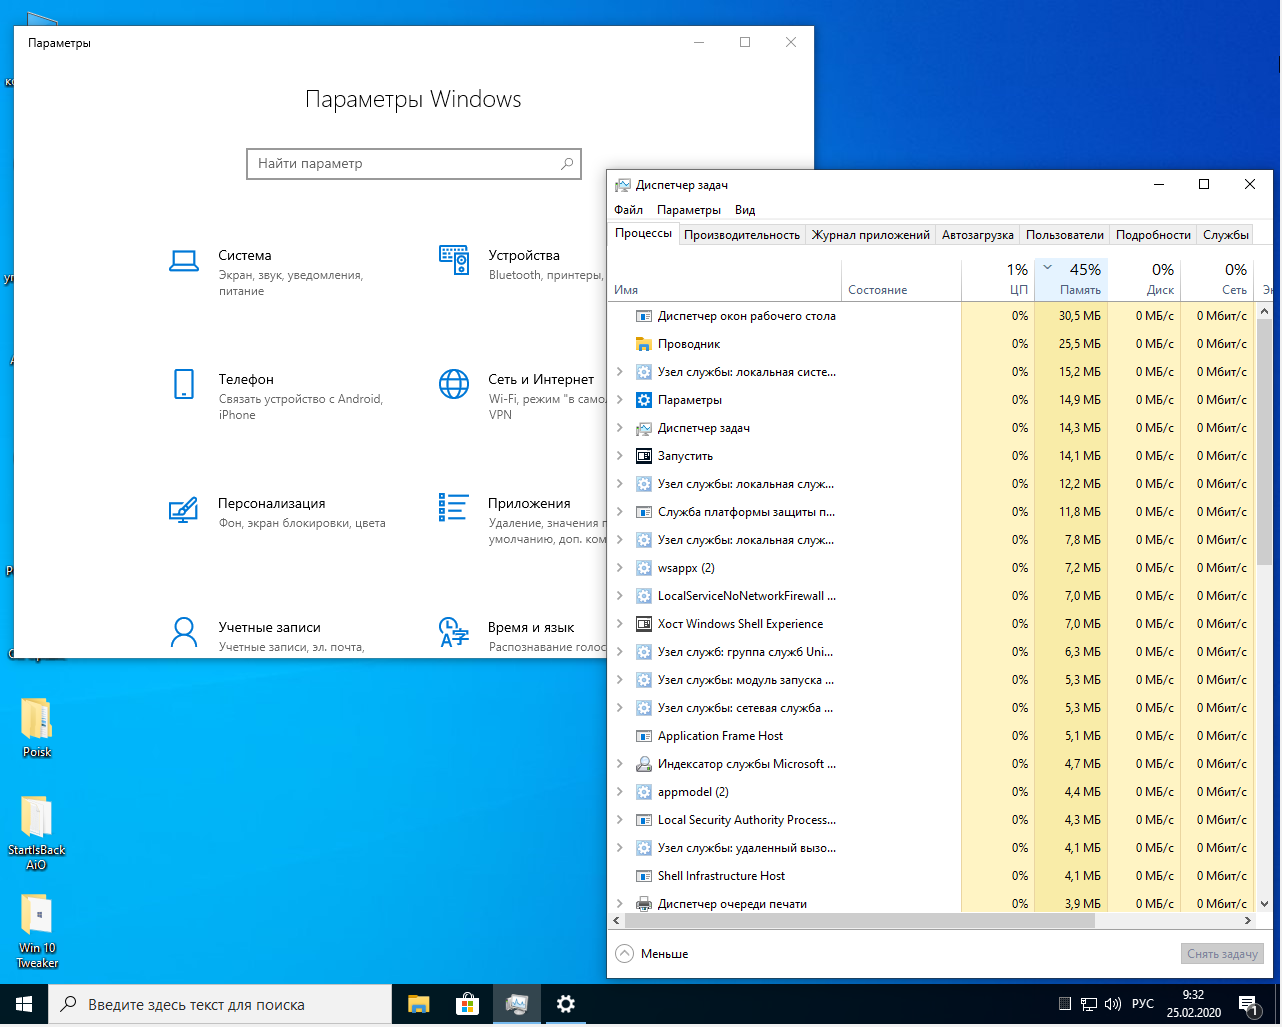 Легкая windows 10 для слабых. Сборки виндовс для слабых ноутбуков. Самая легкая Windows. Windows 10 сборка для слабых ПК. Лёгкая версия Windows 10 для слабых ноутбуков.